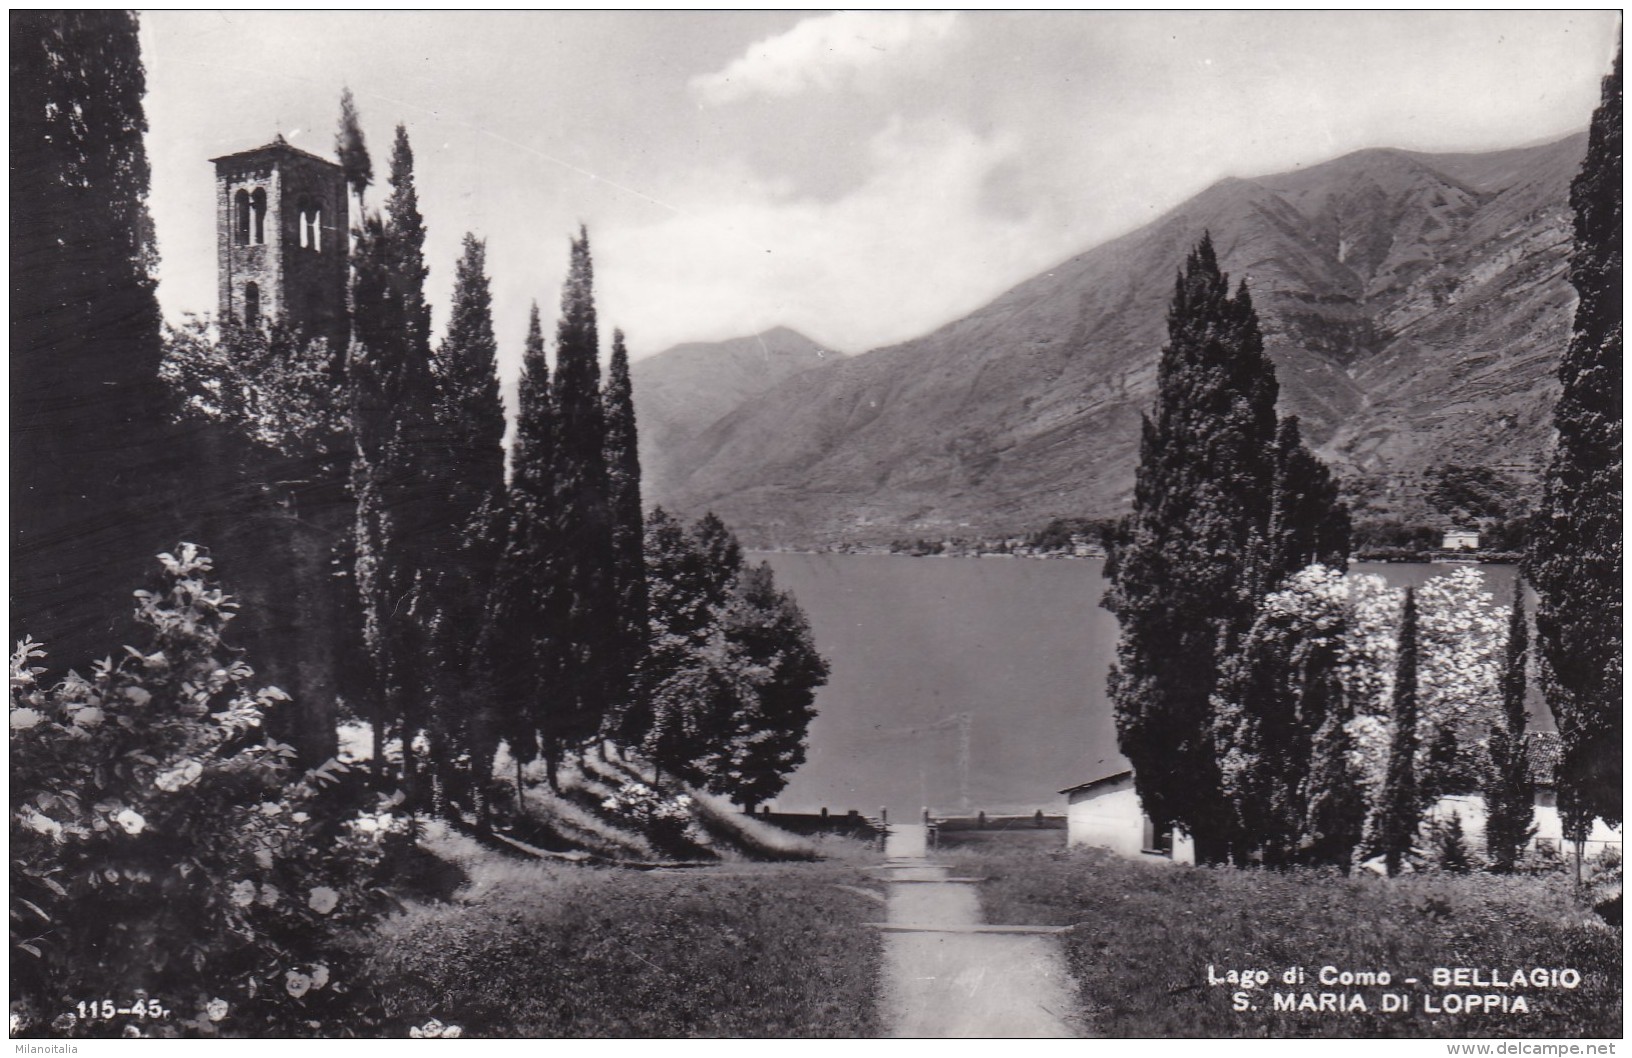 Lago Di Como - Bellagio - S. Maria Di Loppia (115-45) - Como